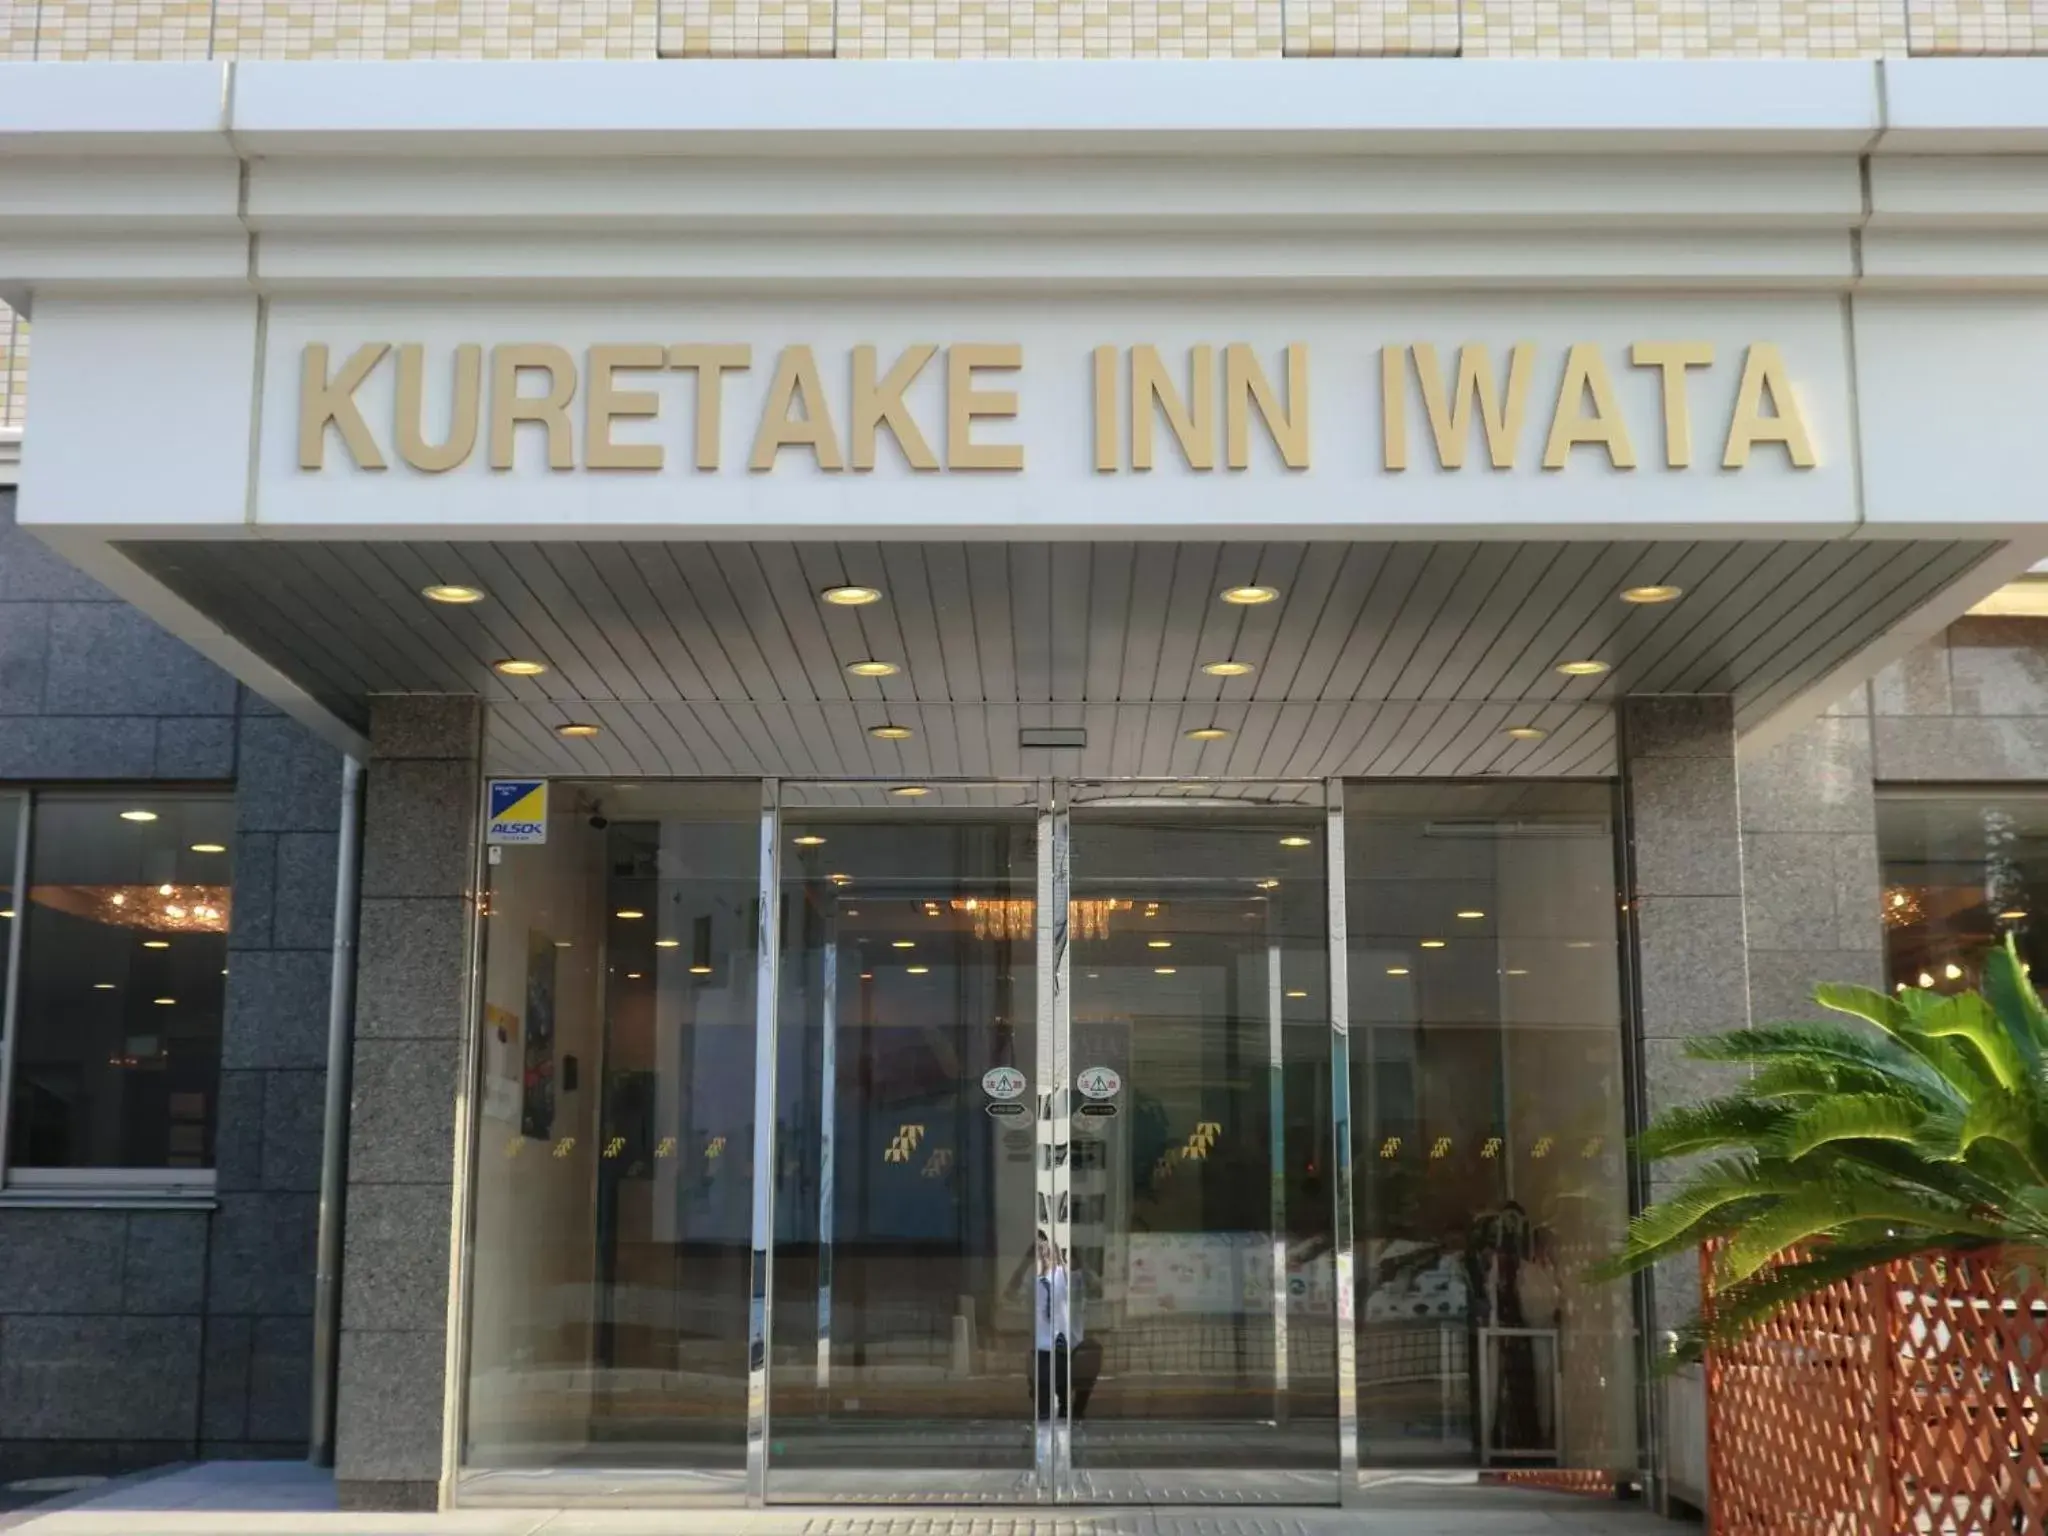 Facade/entrance in Kuretake-Inn Iwata